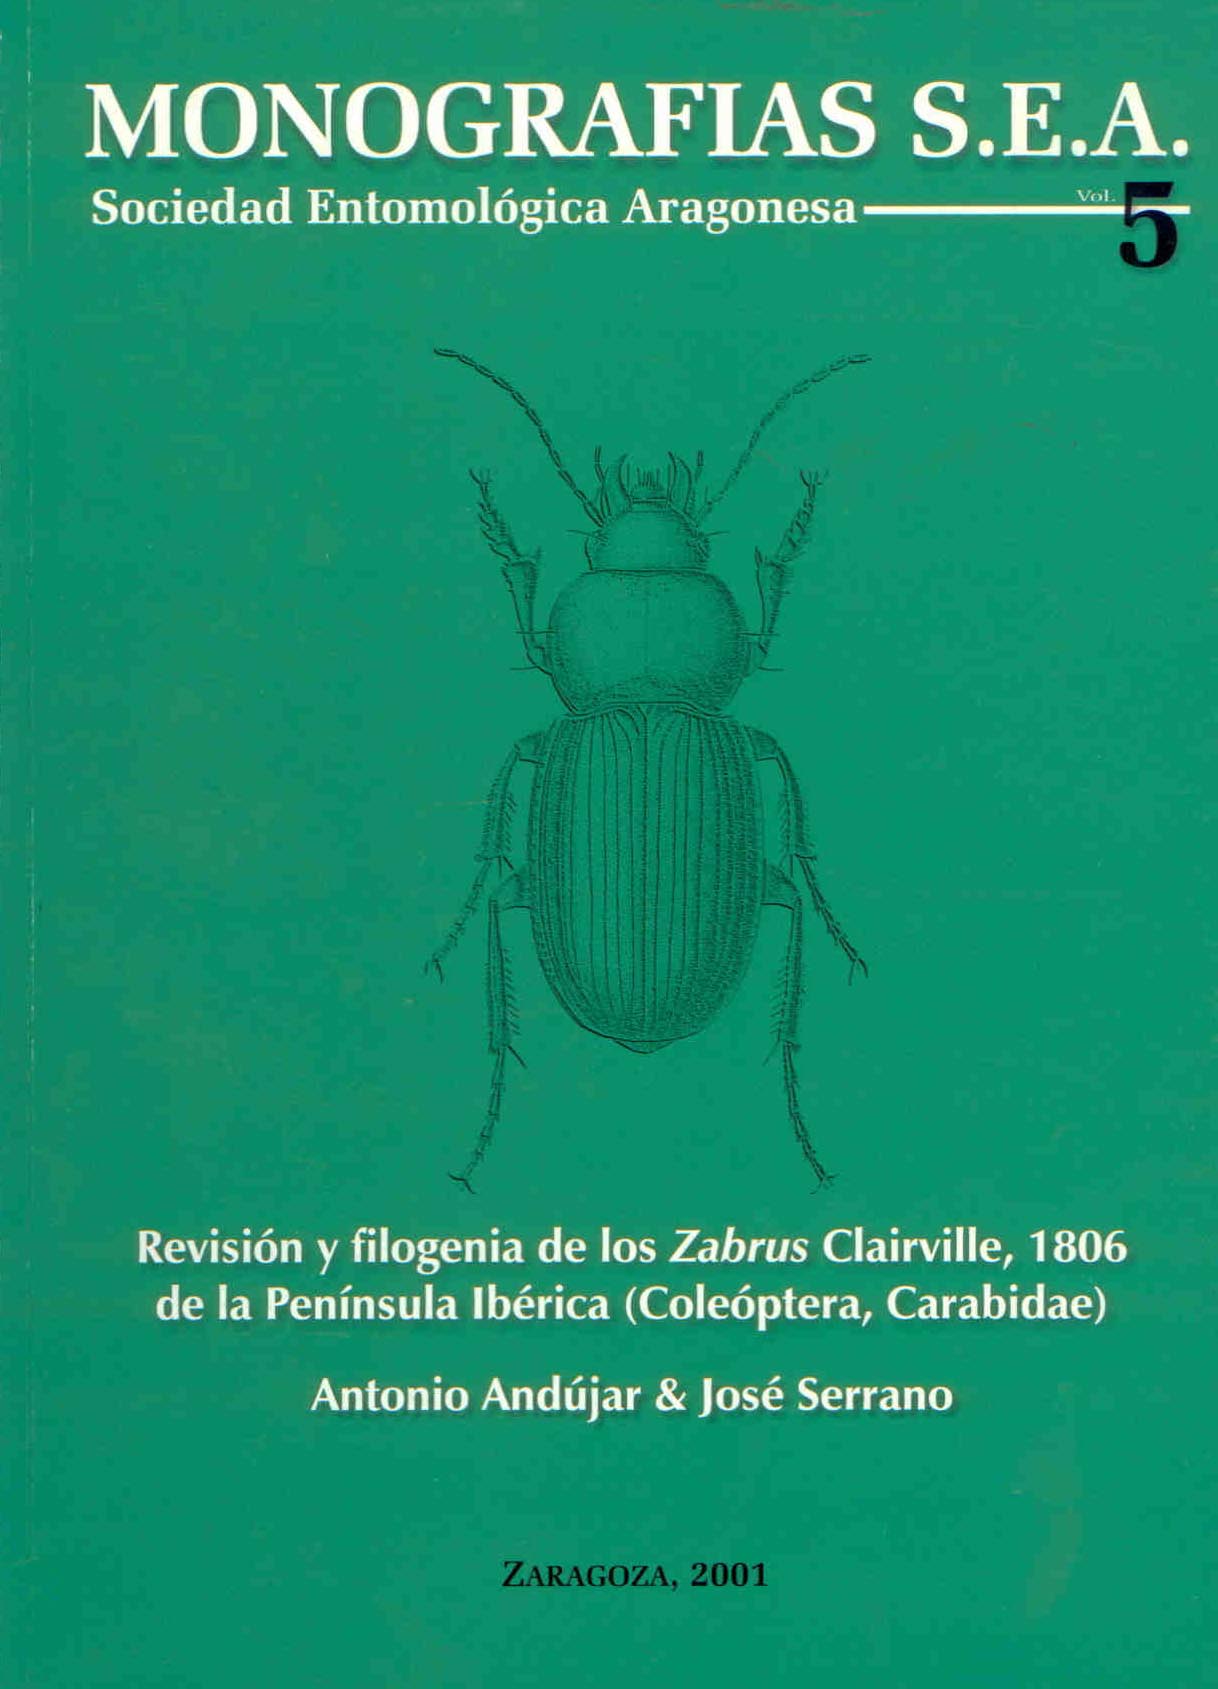 Andujar, A.; Serrano, J. - Revision y filogenia de los Zabrus Clairville, 1806 de la Peninsula Iberica (Coleoptera, Carabidae)